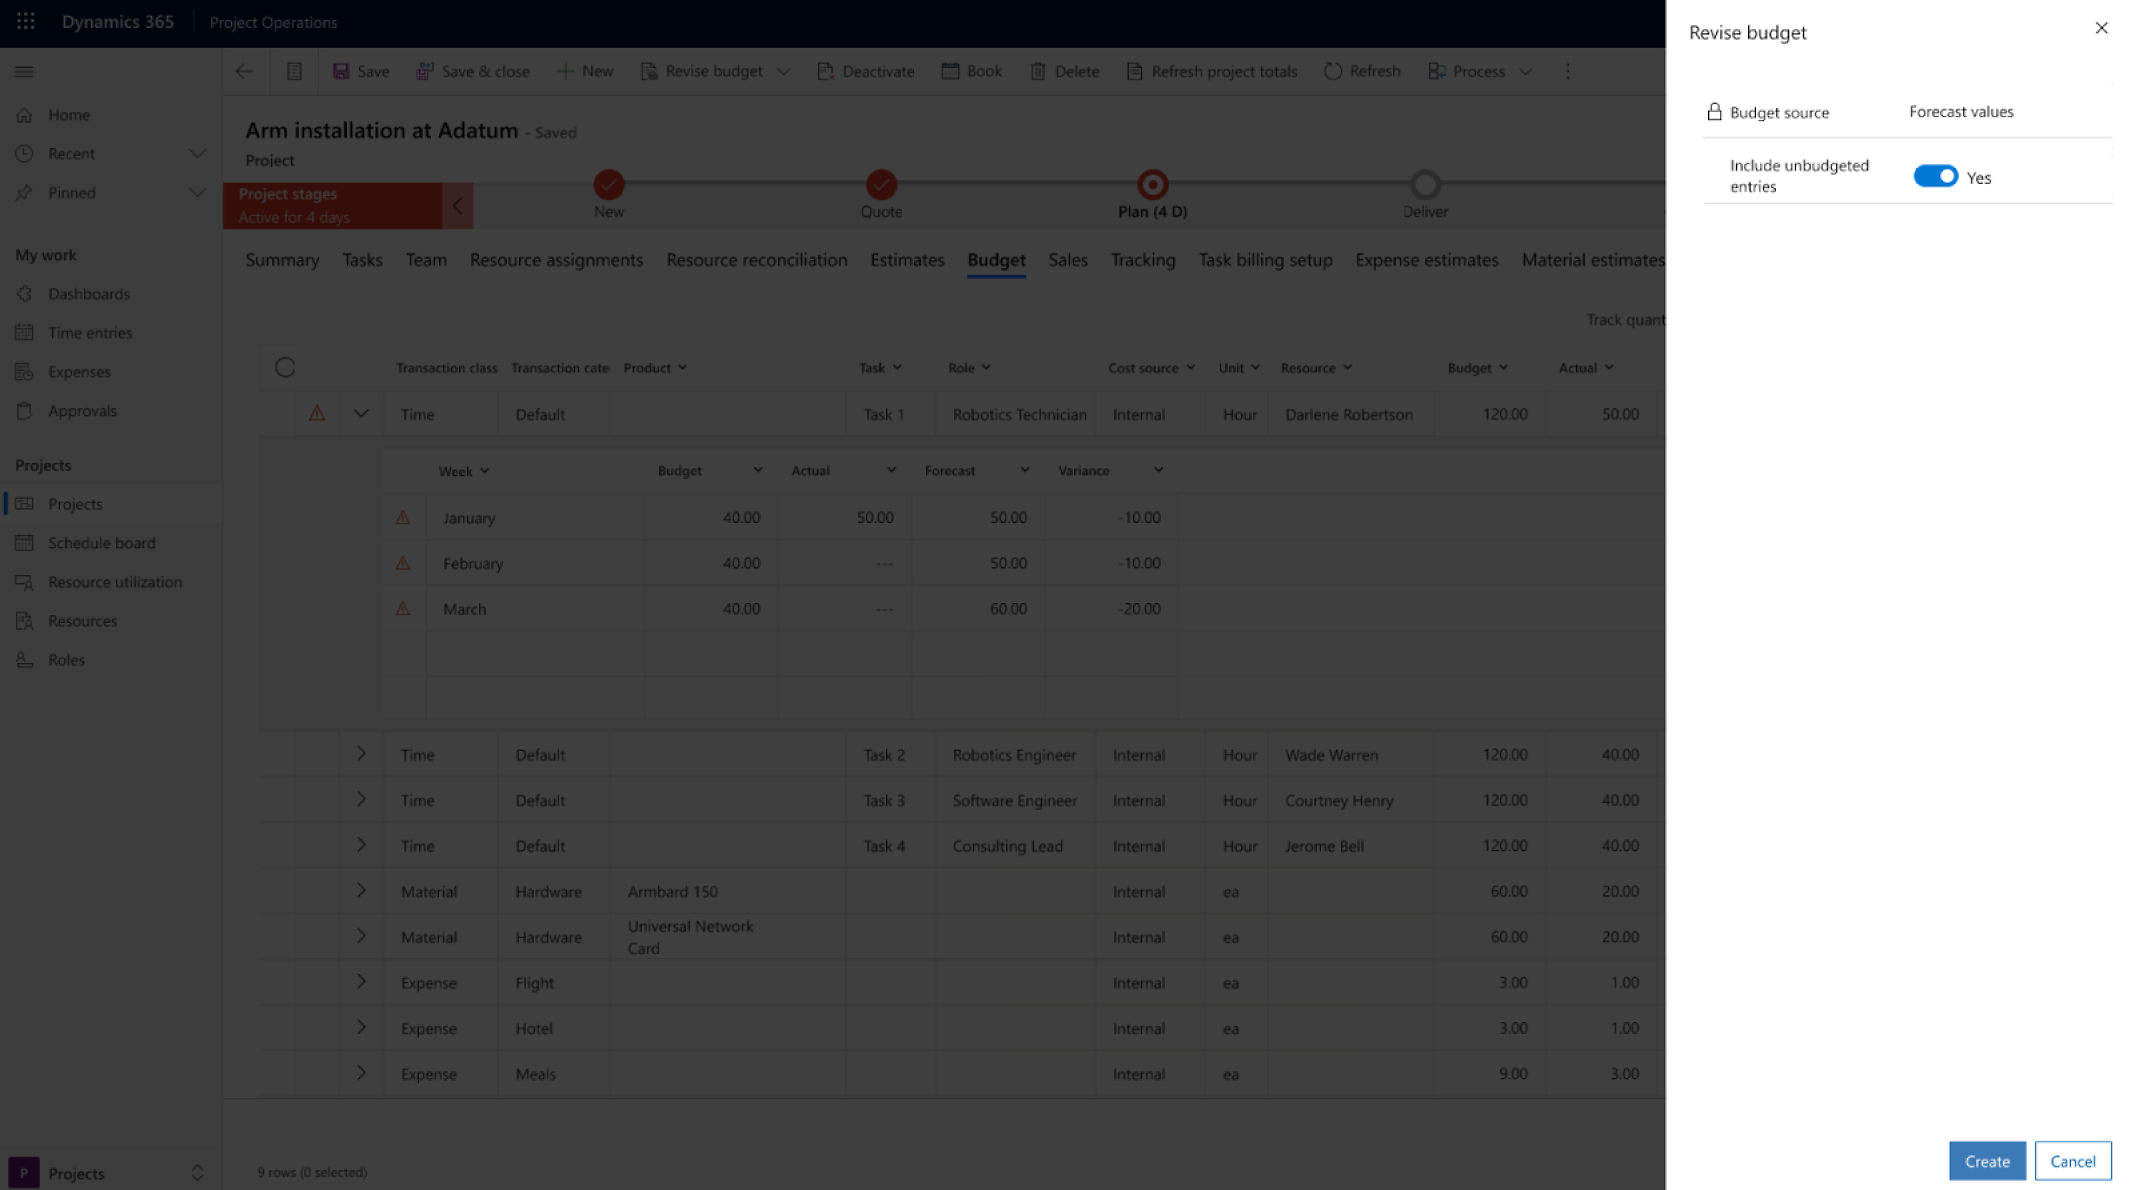 Capture d’écran d’une interface de révision du budget dans Microsoft Dynamics 365 avec un focus sur les opérations de projet